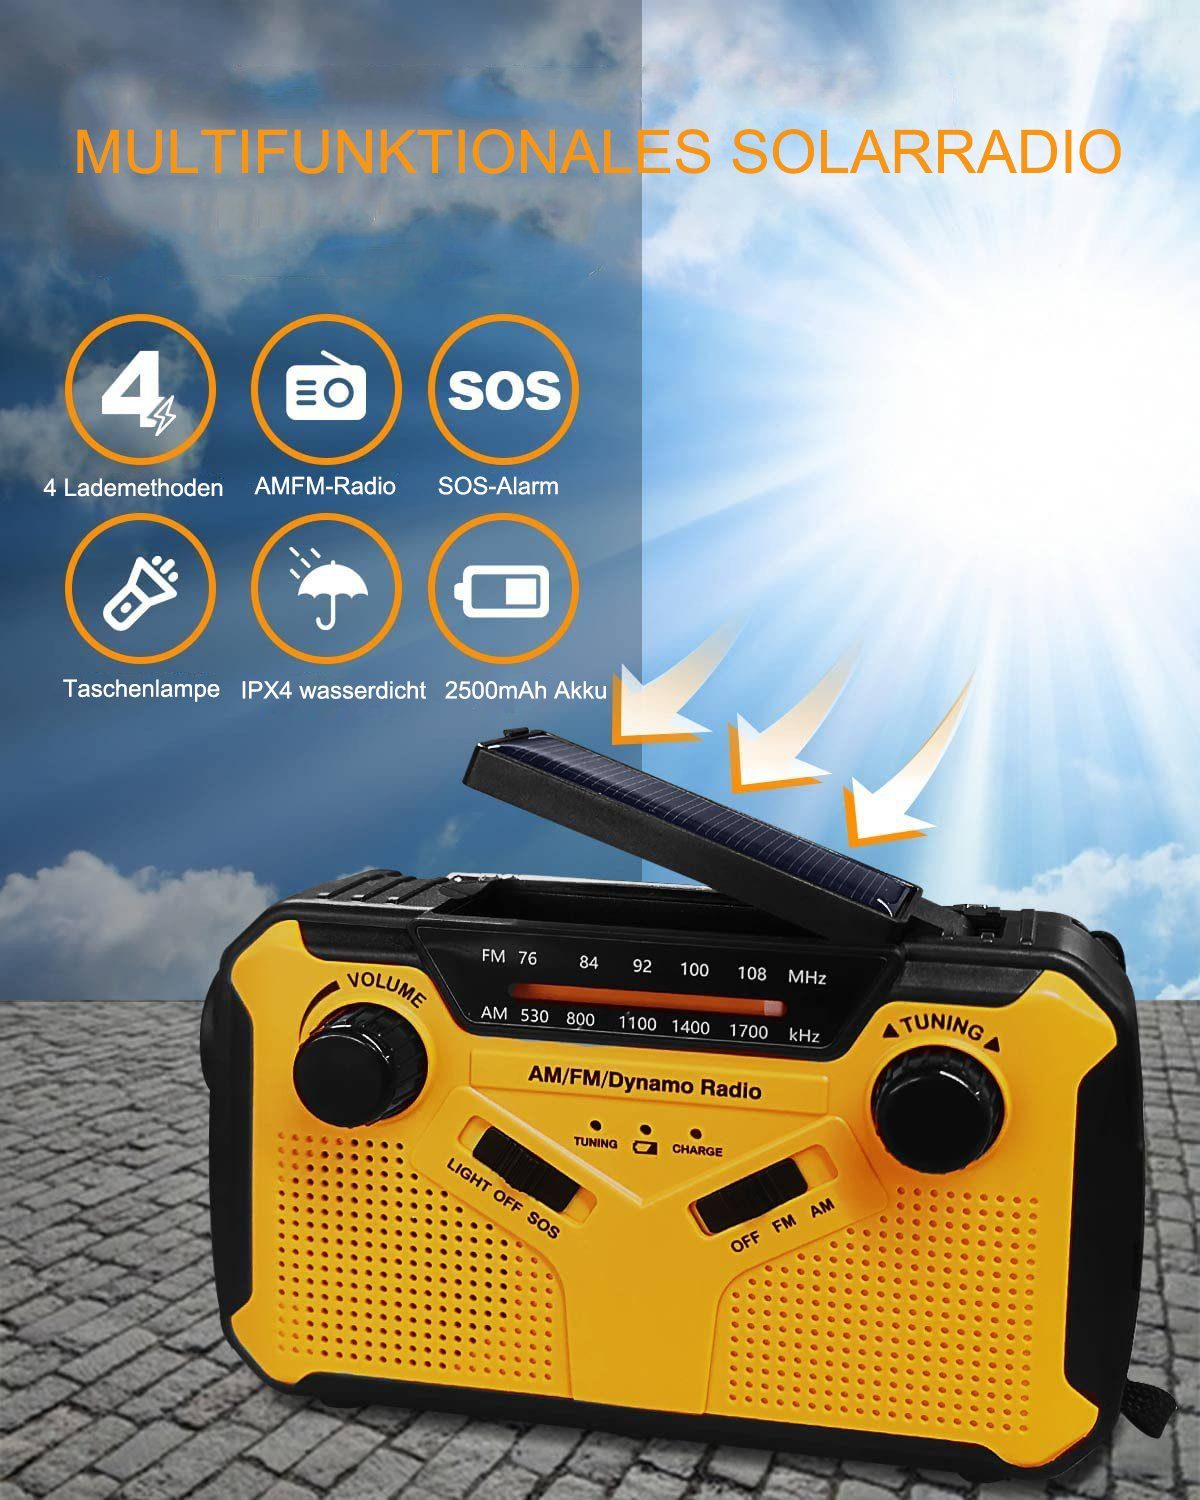 LED Taschenlampe und Leselicht Eingebaute 10000mAh Batterie/Powerbank SOS Alarm für Notfall Ourdoor Color : Grün Y&F-HYFSH Solar Radio Tragbar Kurbelradio Dynamo Radio mit AM/FM/NOAA 